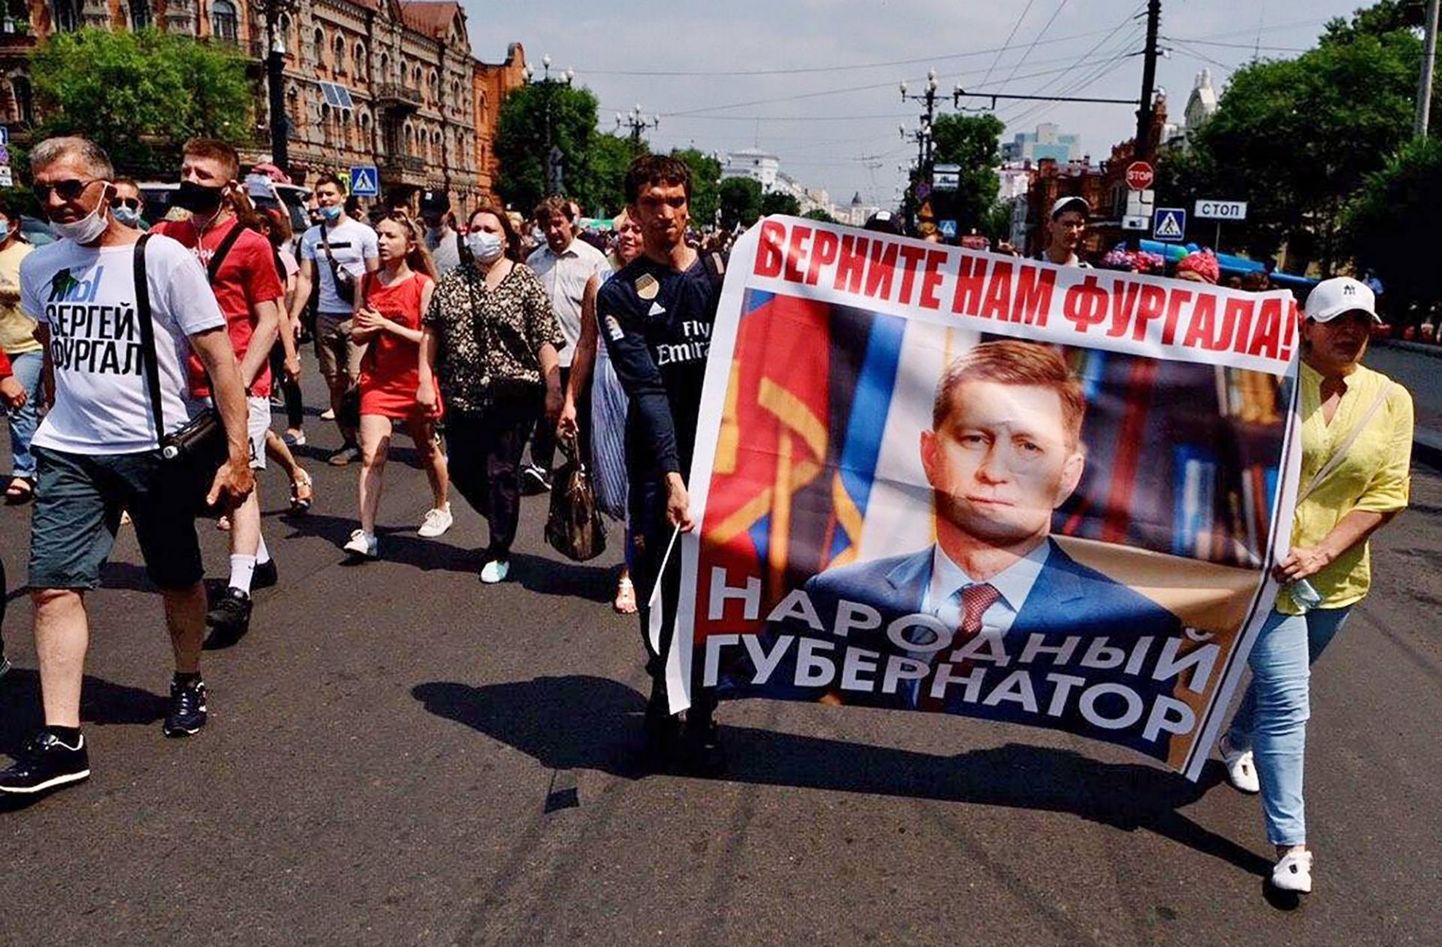 Участники протеста требуют возвращения хабаровского губернатора Сергея Фургала.